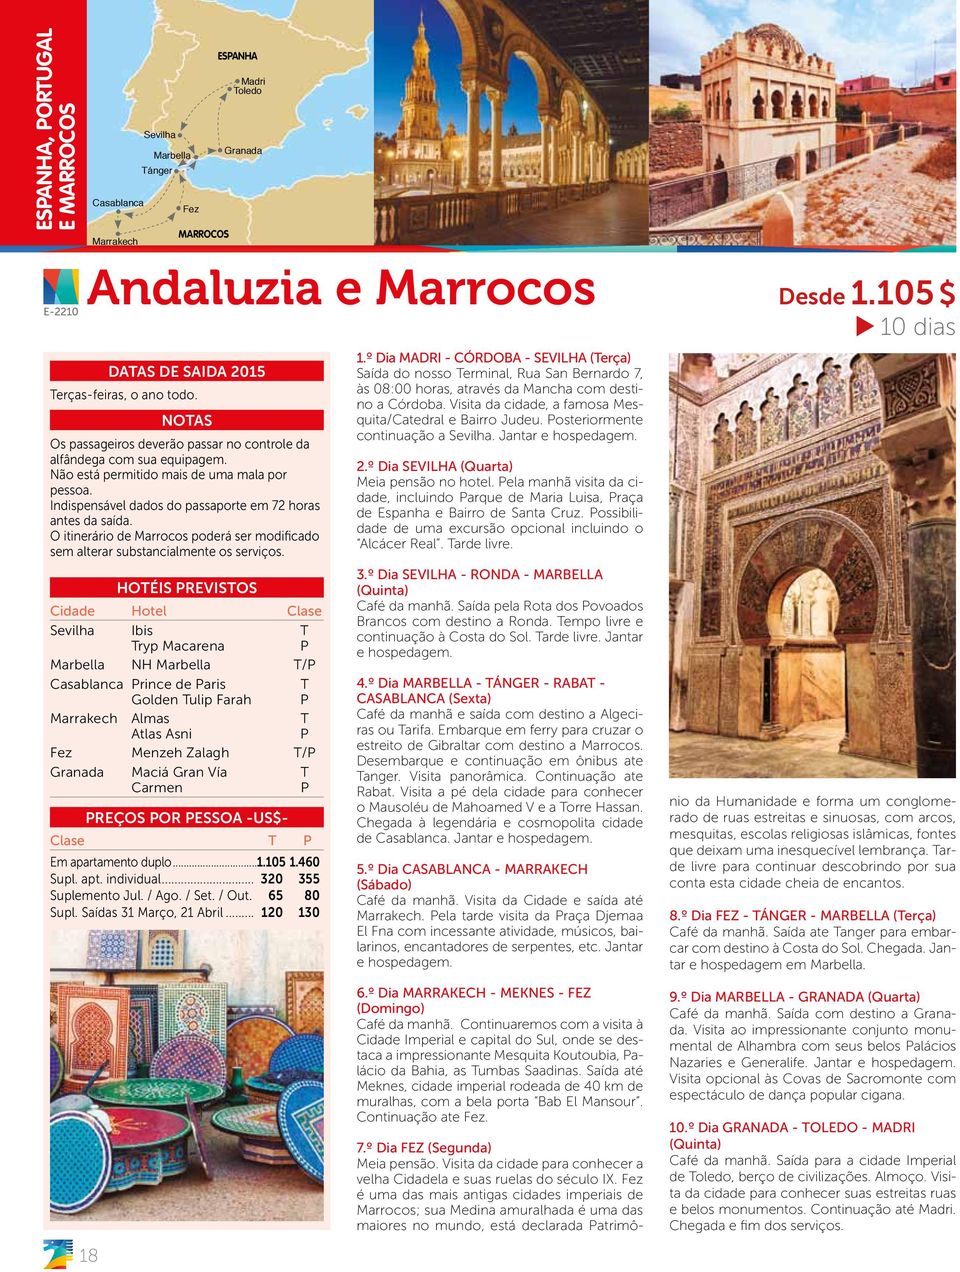 O itinerário de Marrocos poderá ser modificado sem alterar substancialmente os serviços.